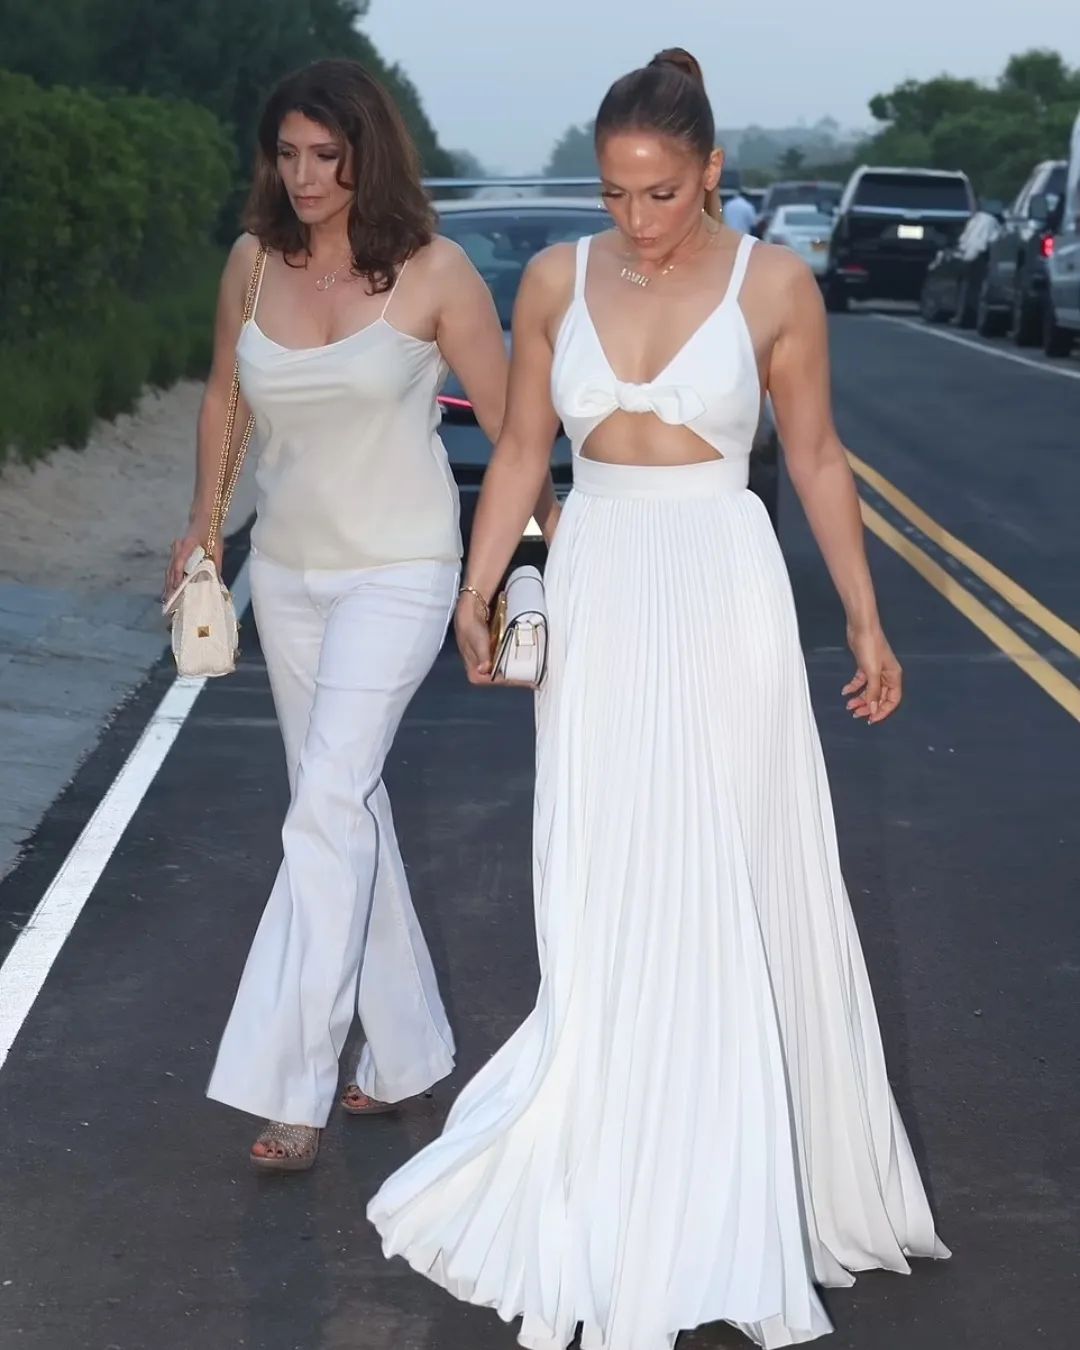 Дженнифер Лопес в белом платье с открытой спиной очаровала милым летнем образом